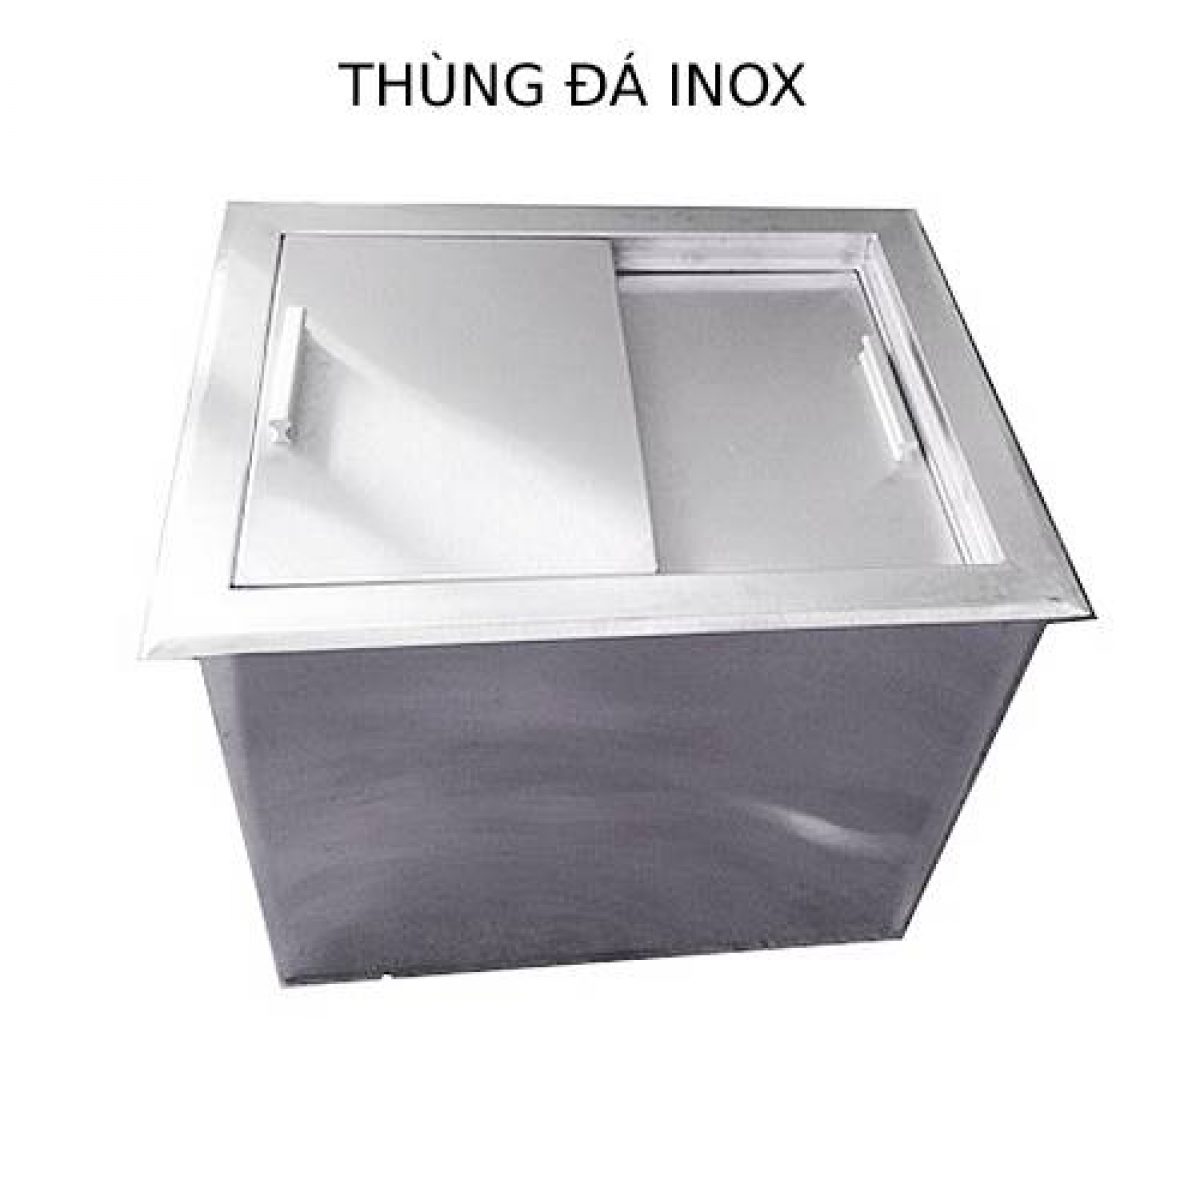 thung da inox am ban 1 | Inox dân dụng Toán Huệ